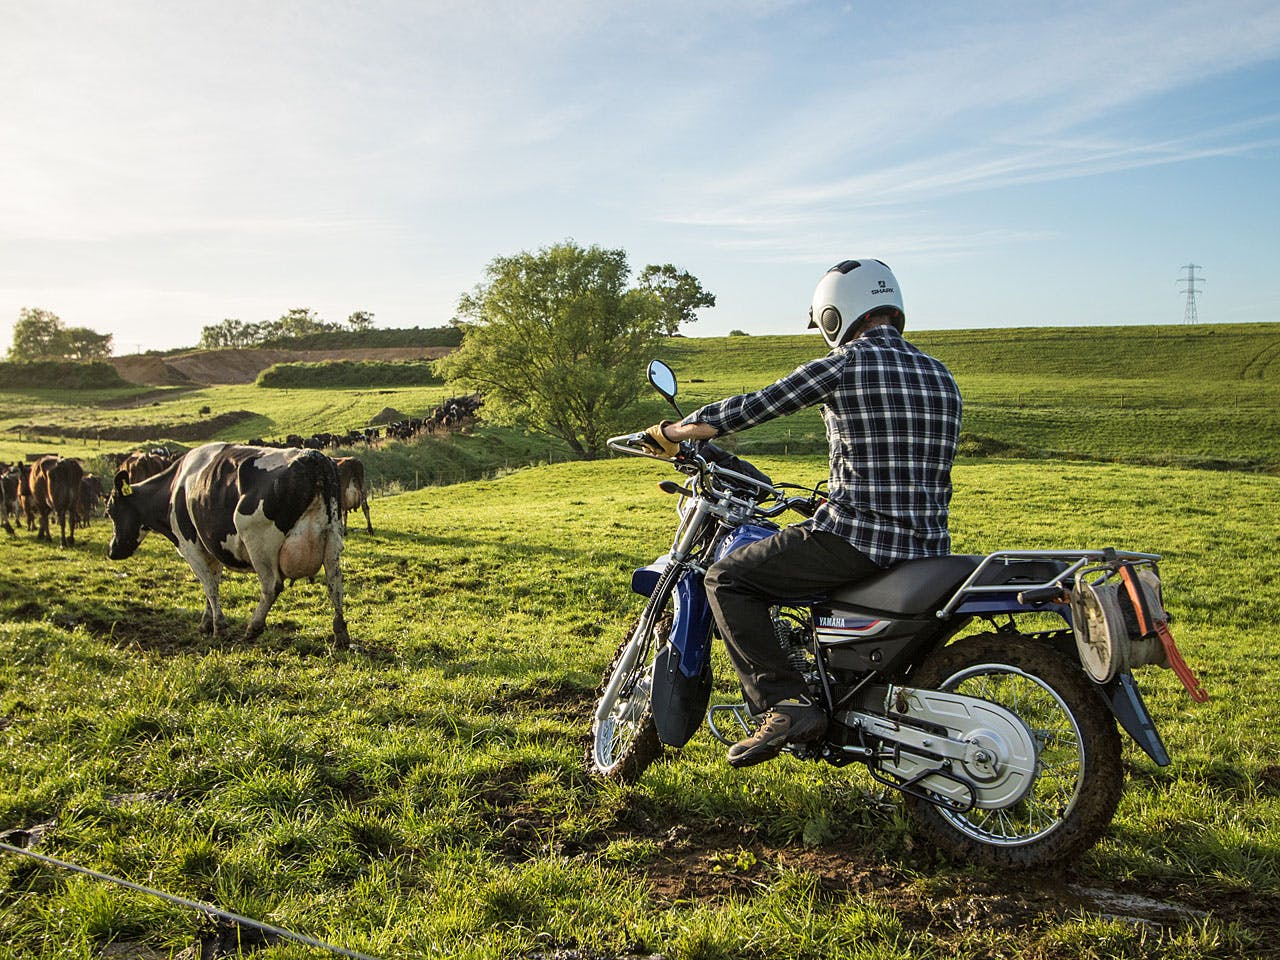 Yamaha AG125 motorcycle on a farm